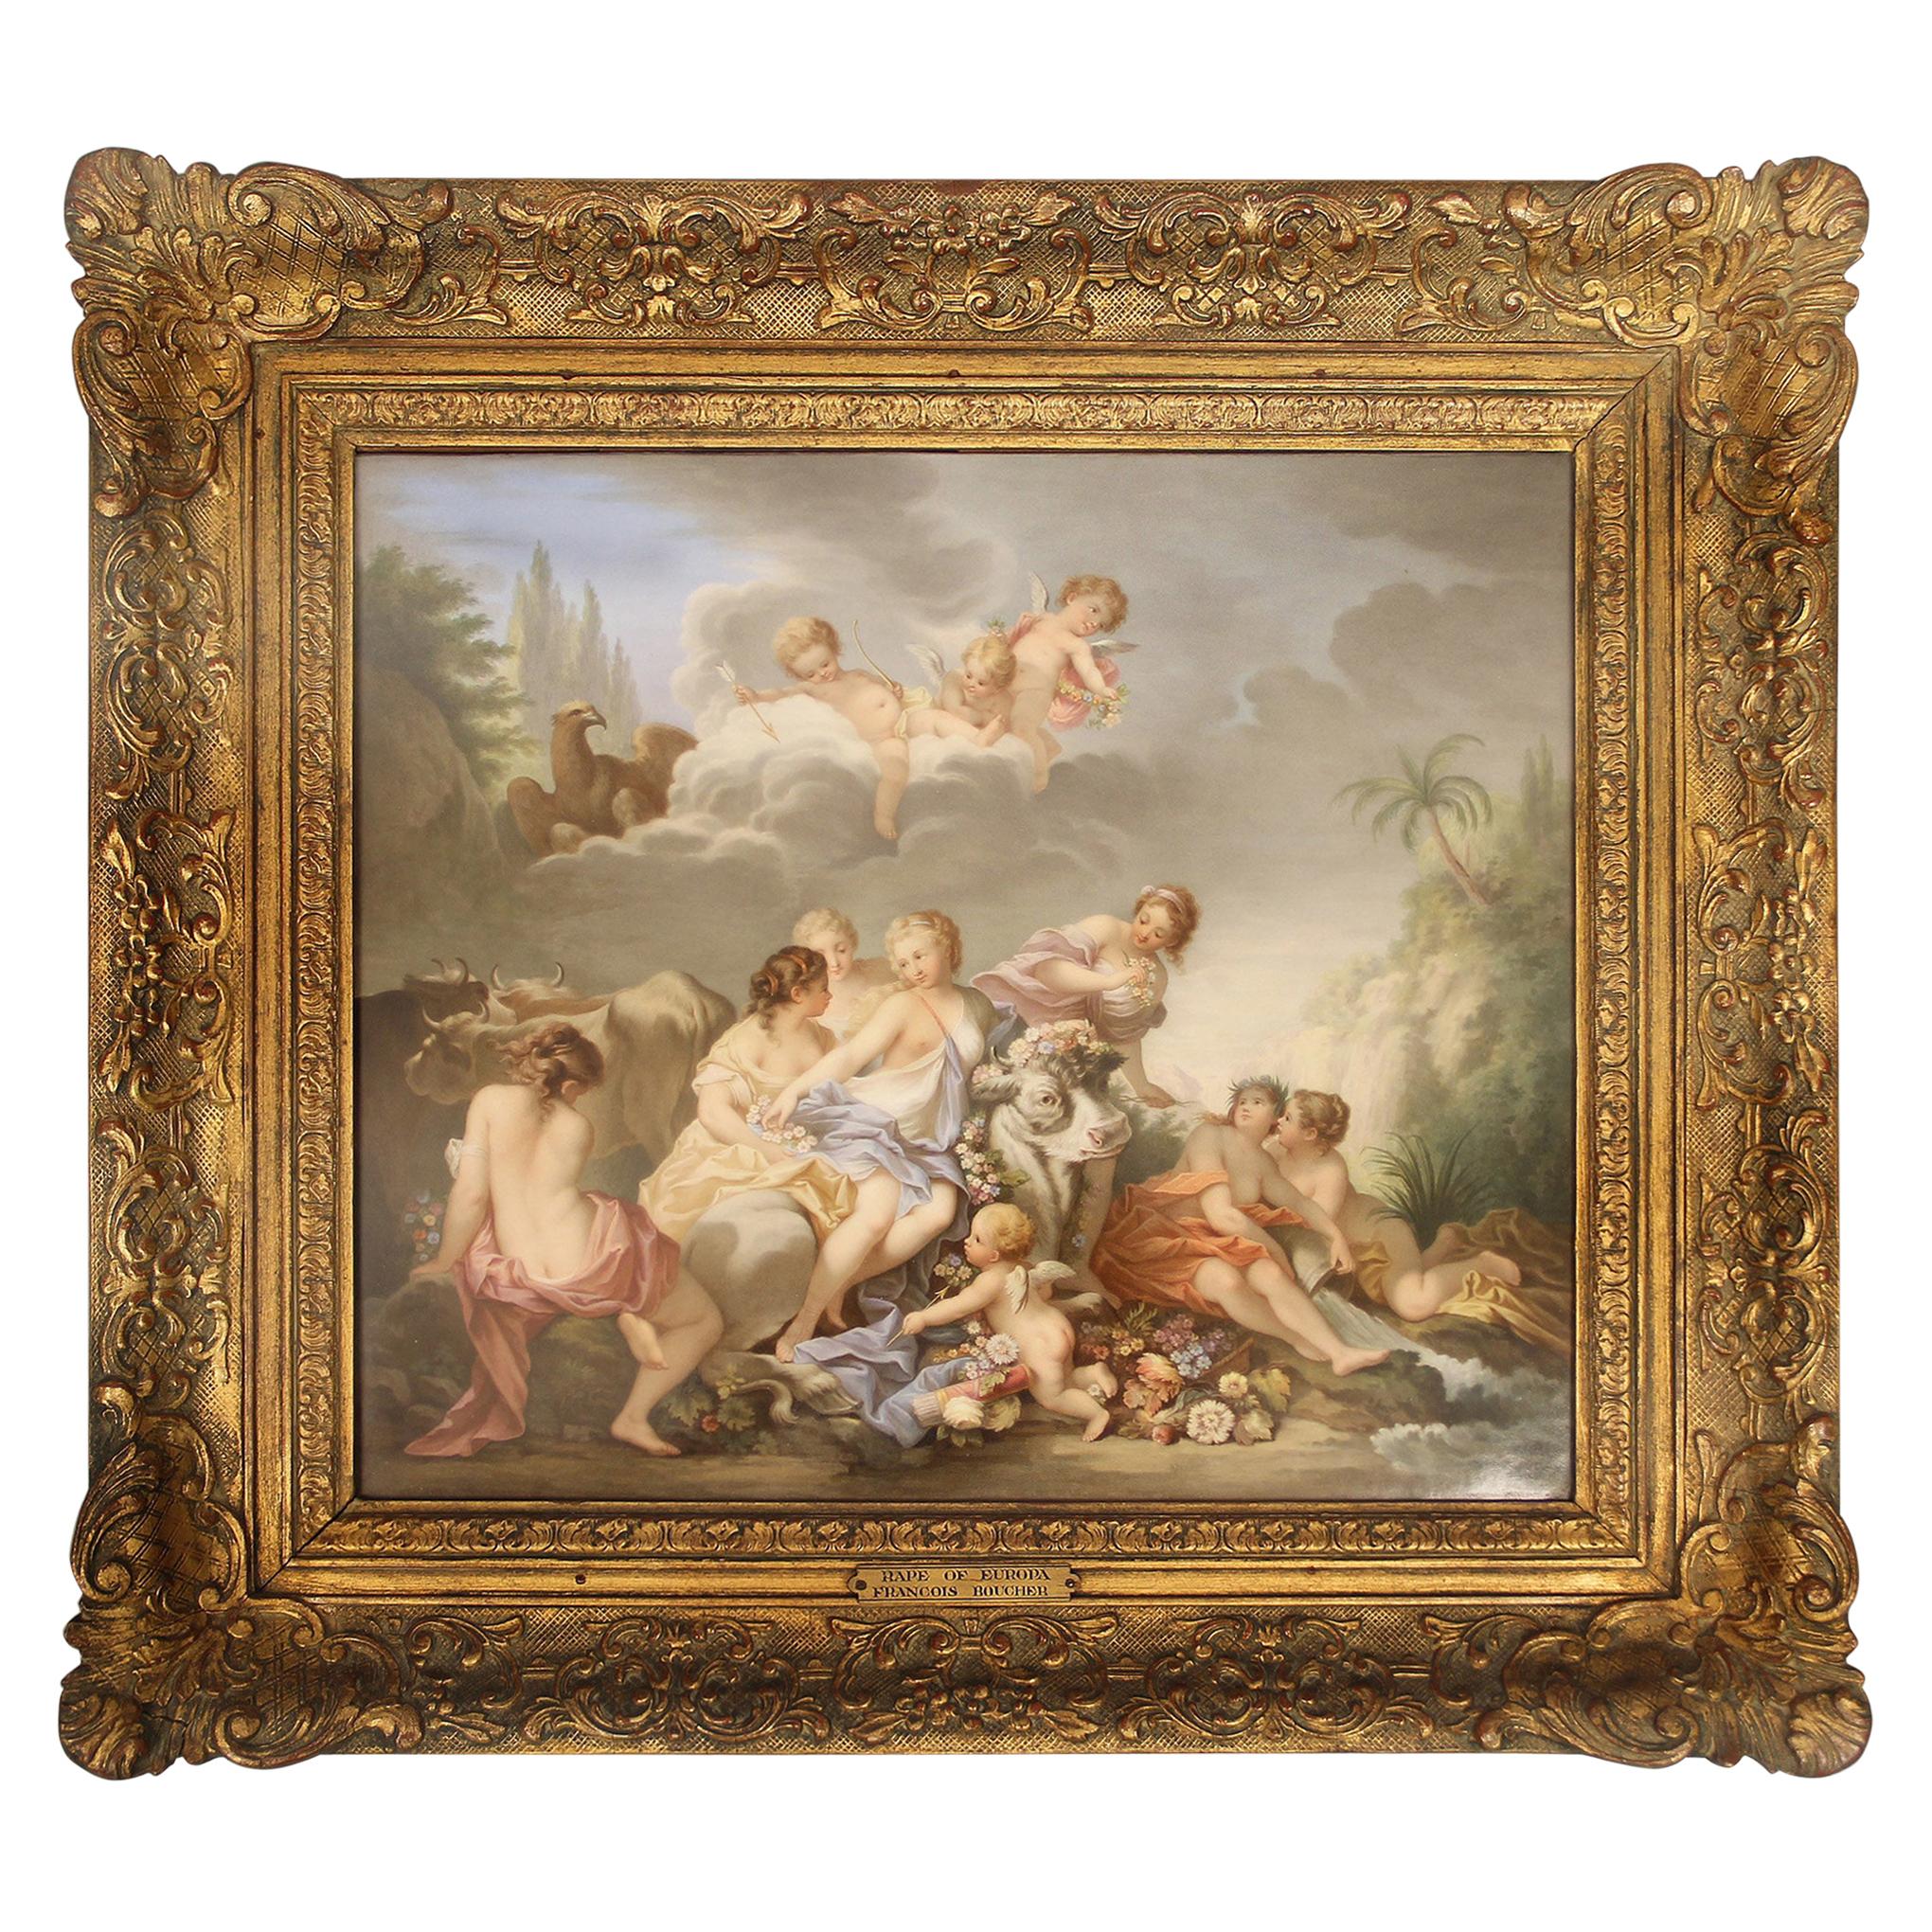 19th Century Meissen Porcelain Plaque “Rape of Europa” after François Boucher